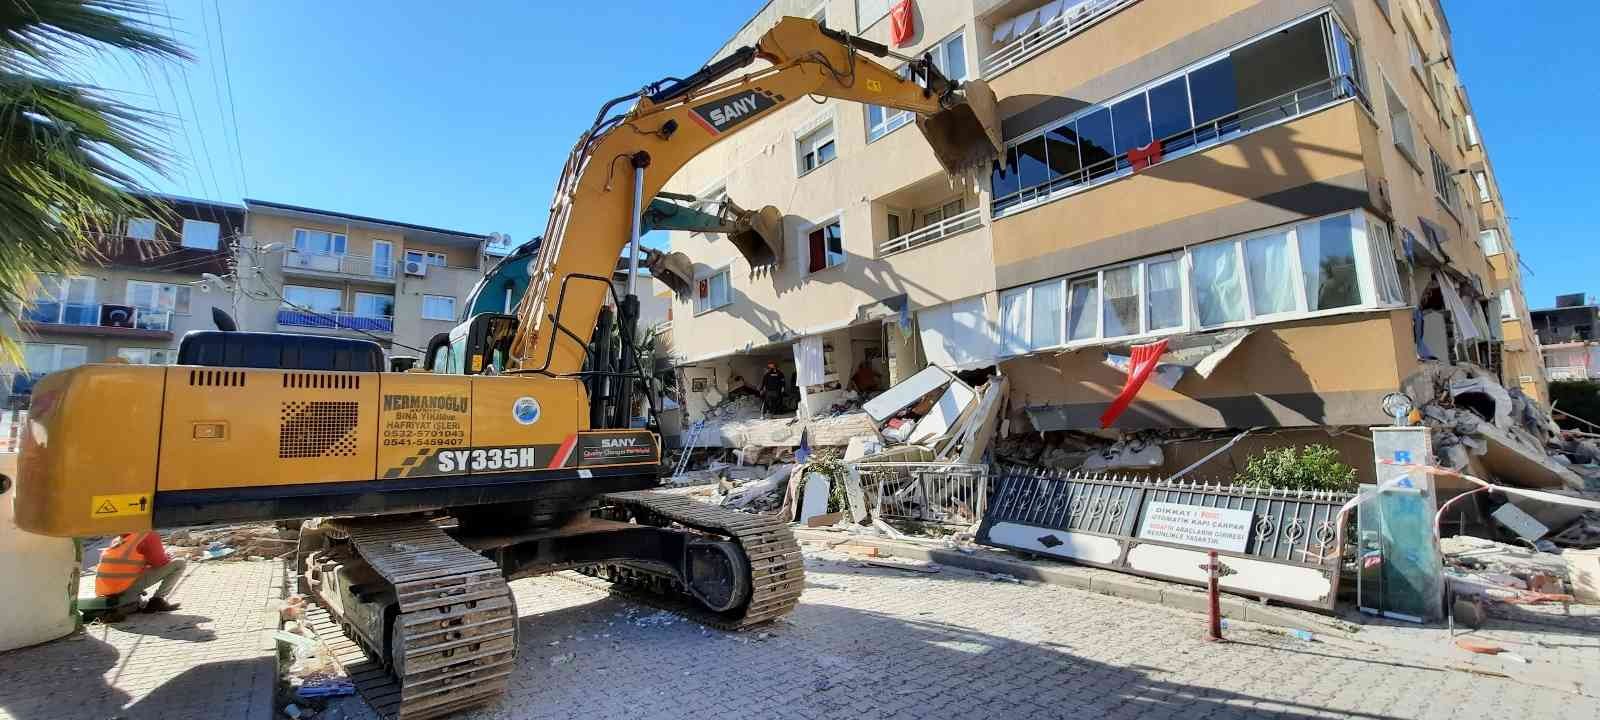 Depremde 10 kişinin yaralandığı siteyle ilgili 3 sanık yargılanacak #izmir